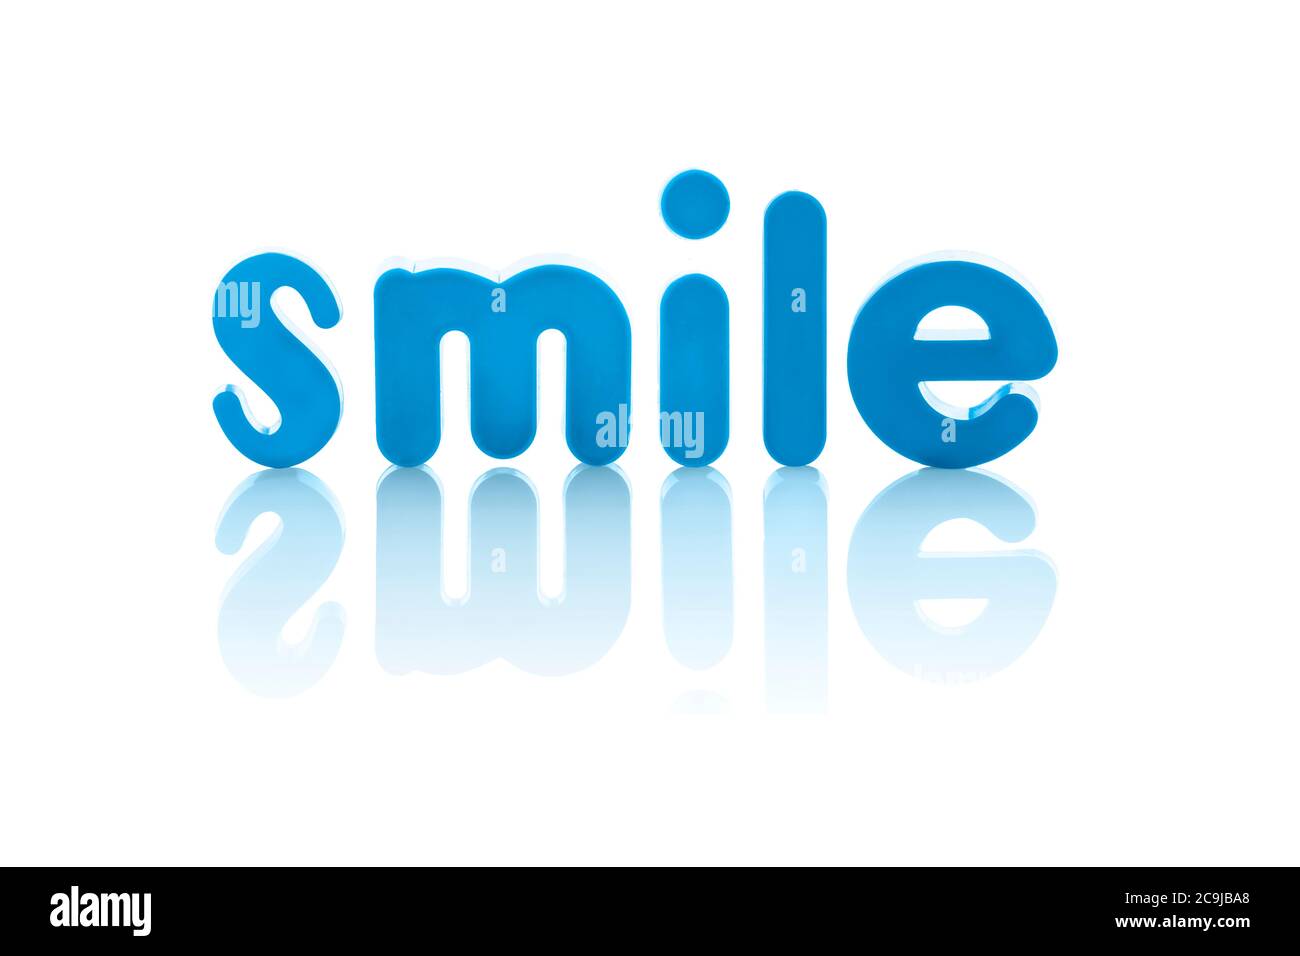 La palabra "sonrisa" en letras azules contra un fondo blanco. Foto de stock